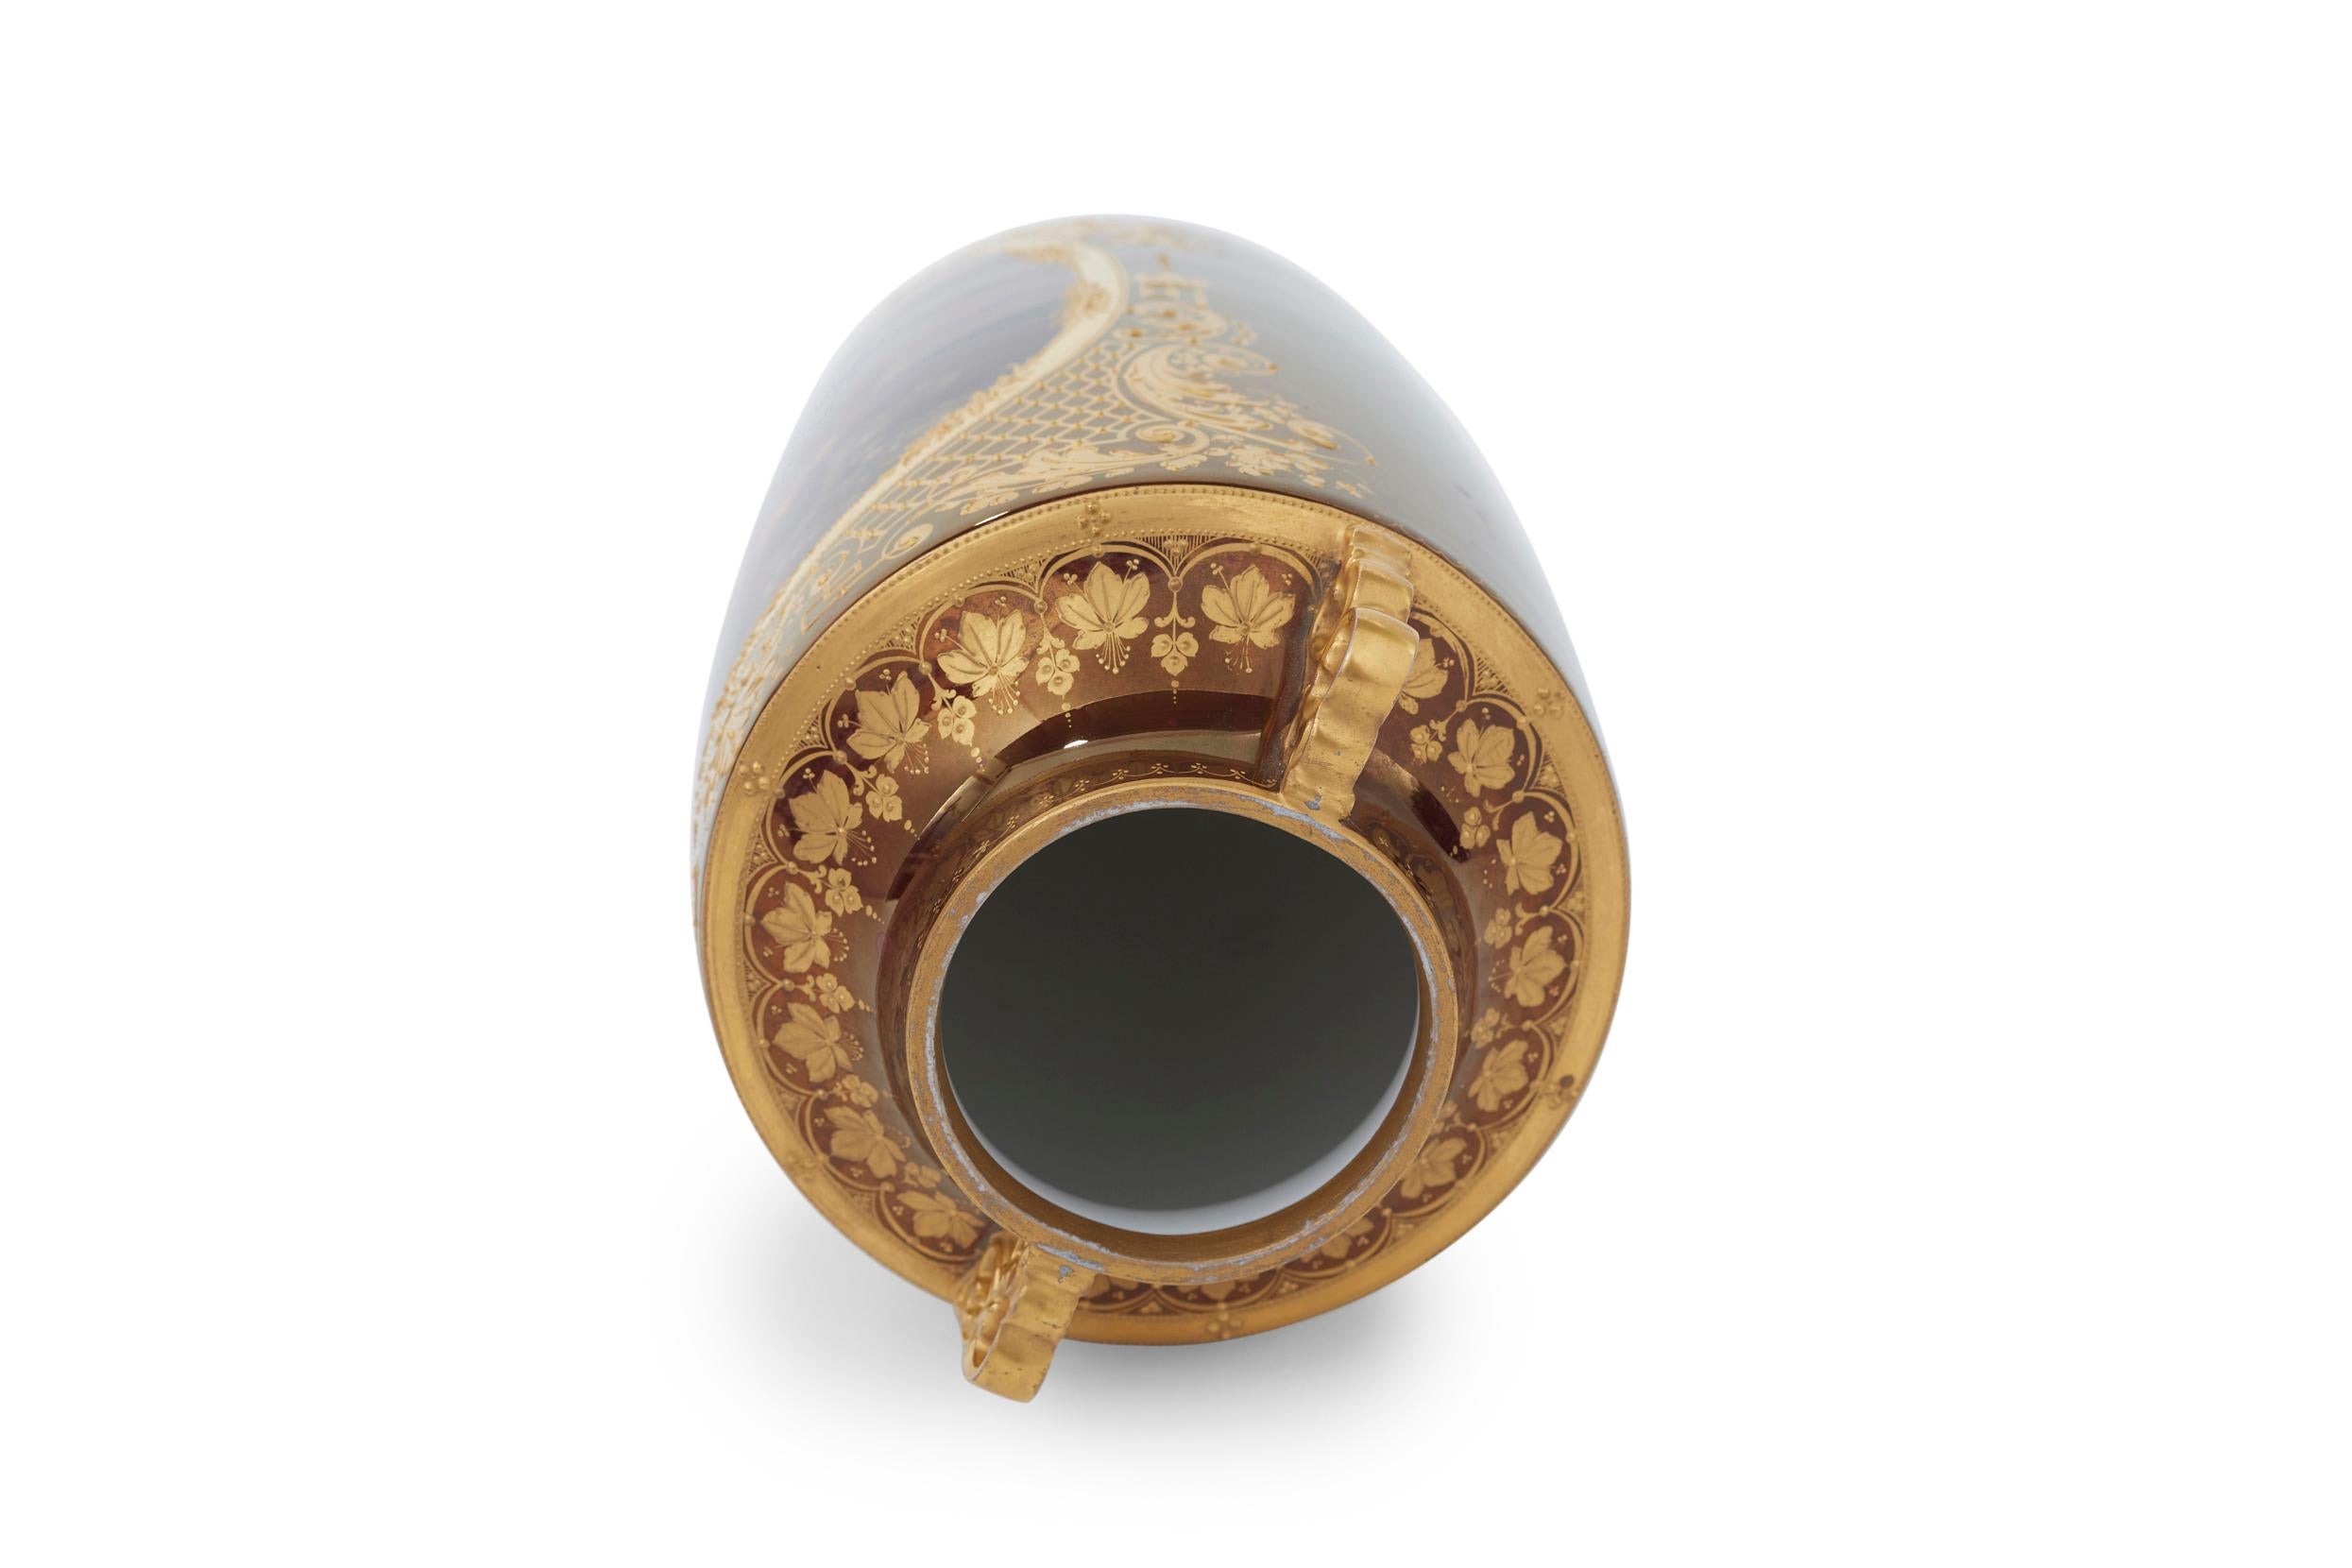 European Royal Vienna Porcelain Decorative Vase / Piece For Sale